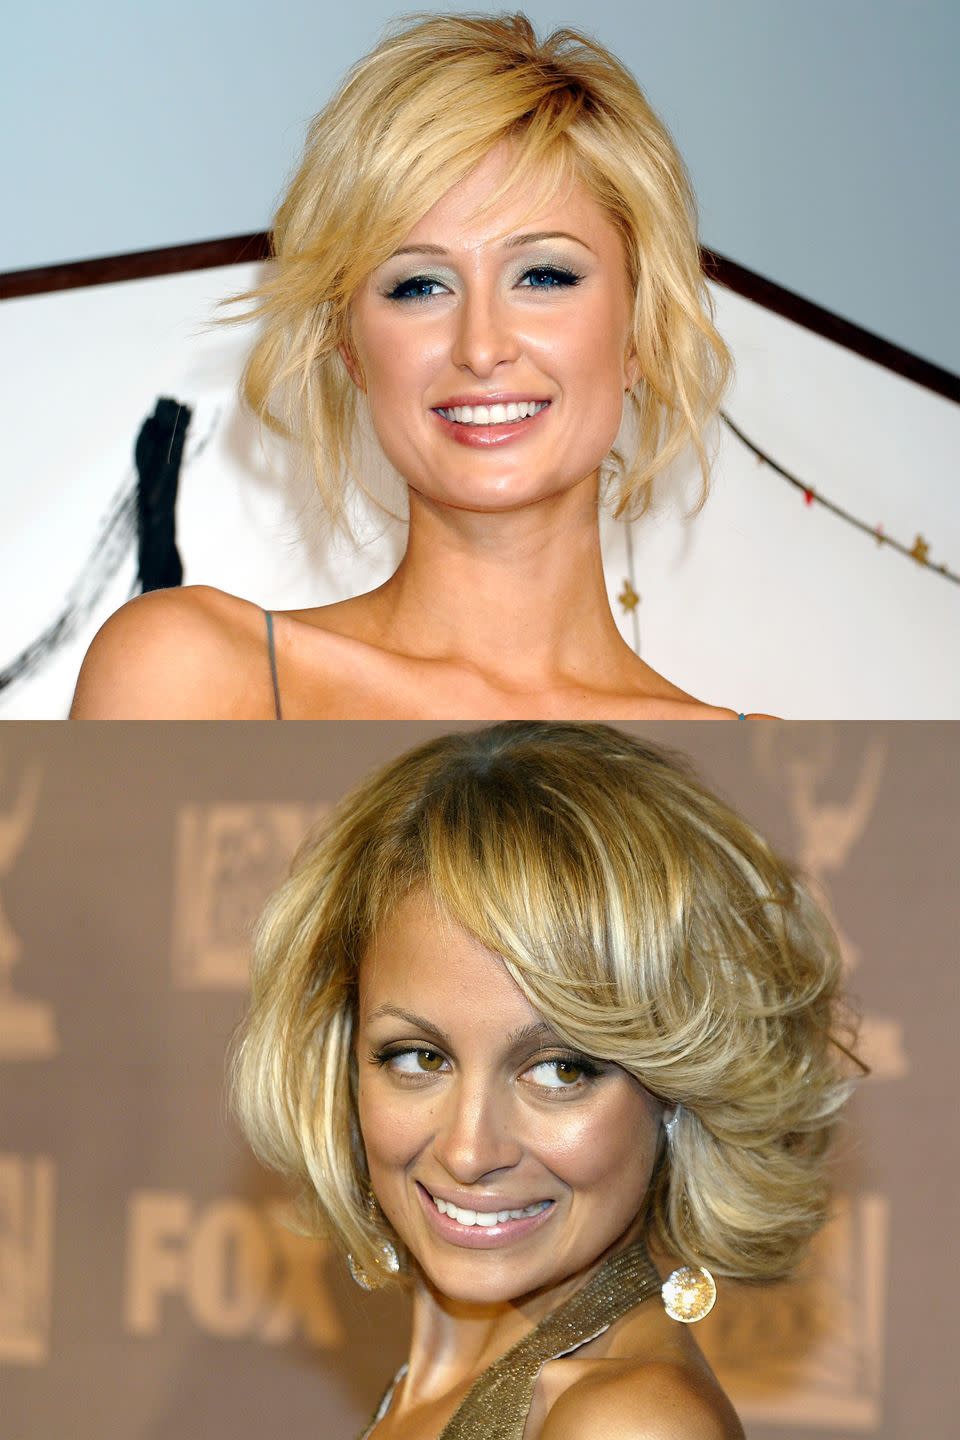 2005: Paris Hilton vs. Nicole Richie